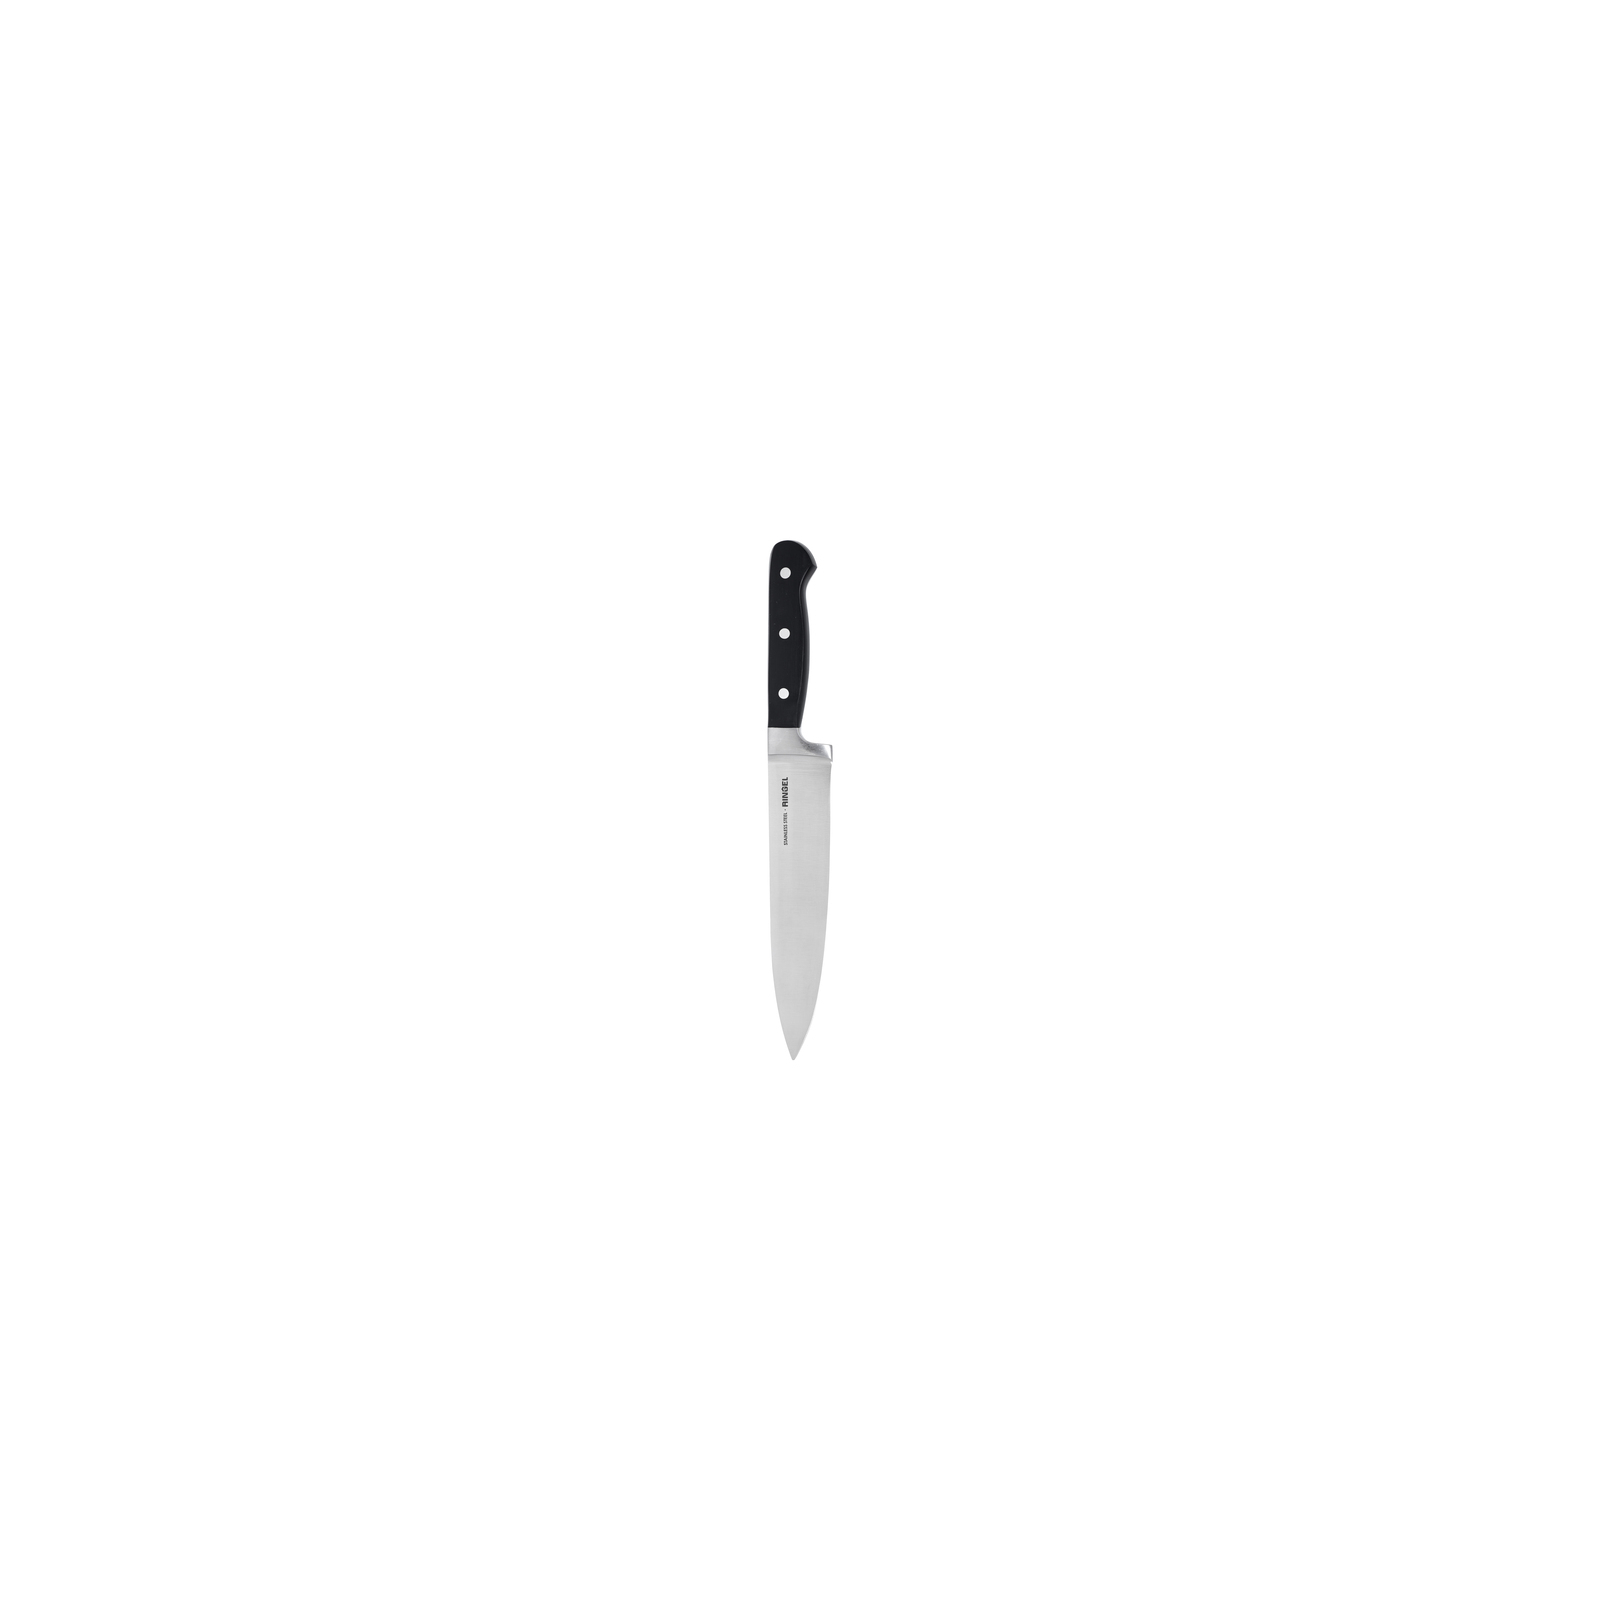 Кухонный нож Ringel Tapfer поварской 21см (RG-11001-4) изображение 2